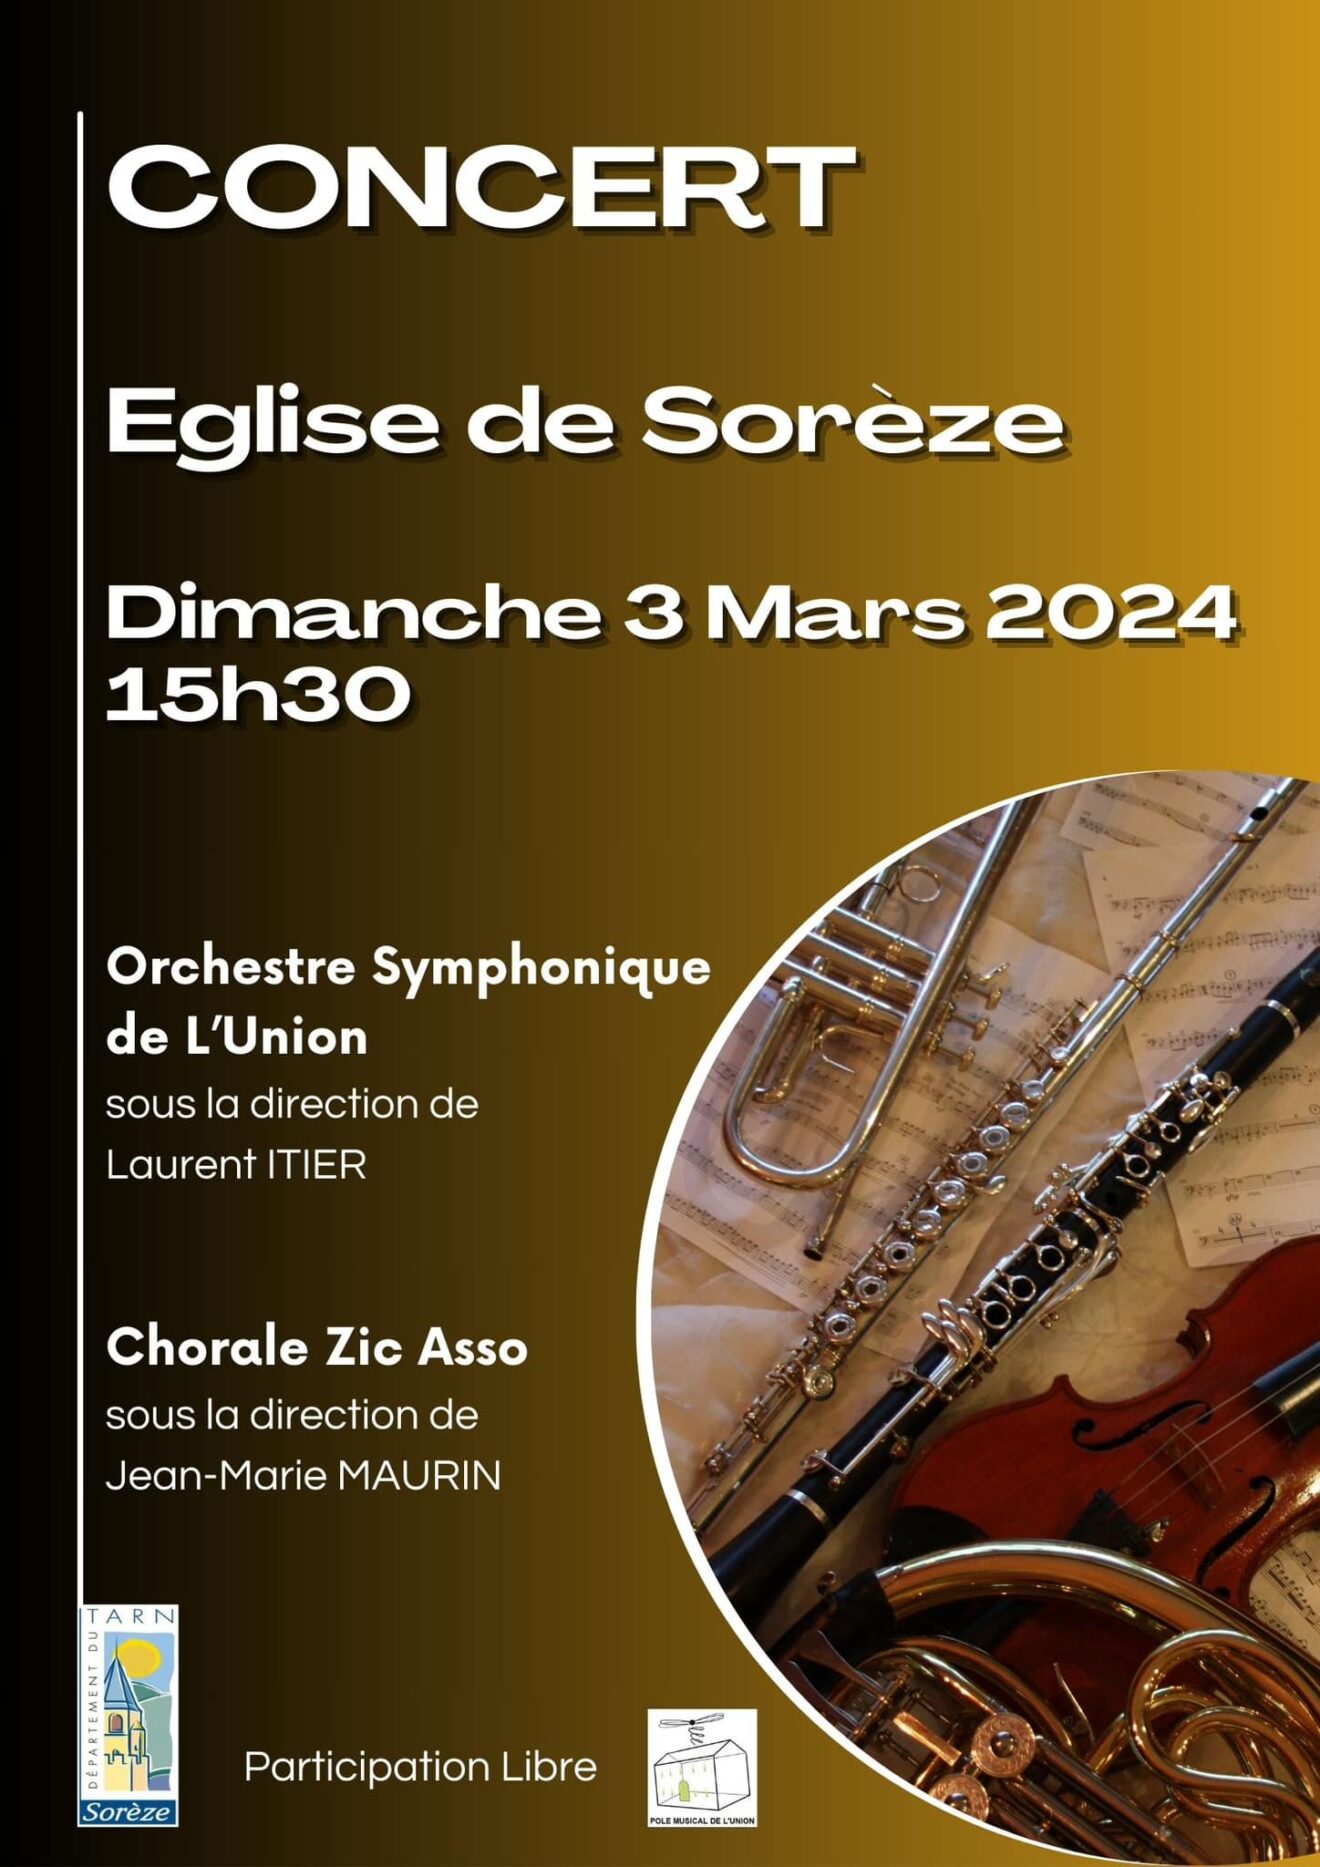 Concert Orchestre Symphonique de l'Union et Chorale Zic Asso